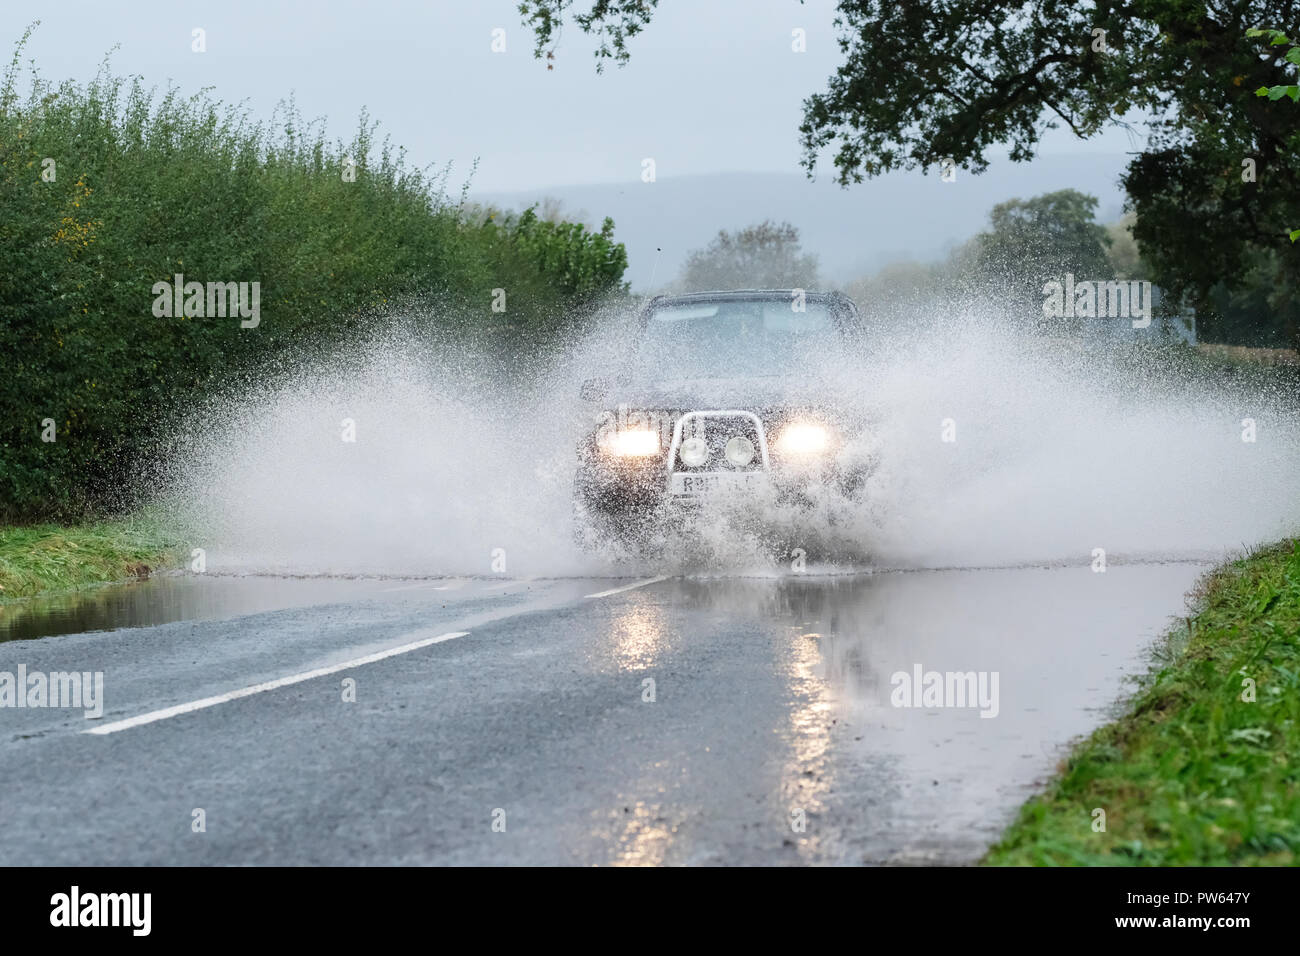 Brede, Powys, Wales - Am Samstag, den 13. Oktober 2018 - Ein 4WD Auto fährt durch Überschwemmungen auf der Straße bei Crickhowell nach sintflutartigen Regenfällen während Sturm Callum - der angrenzenden Fluss Usk hat die Ufer. Foto Steven Mai/Alamy leben Nachrichten Stockfoto